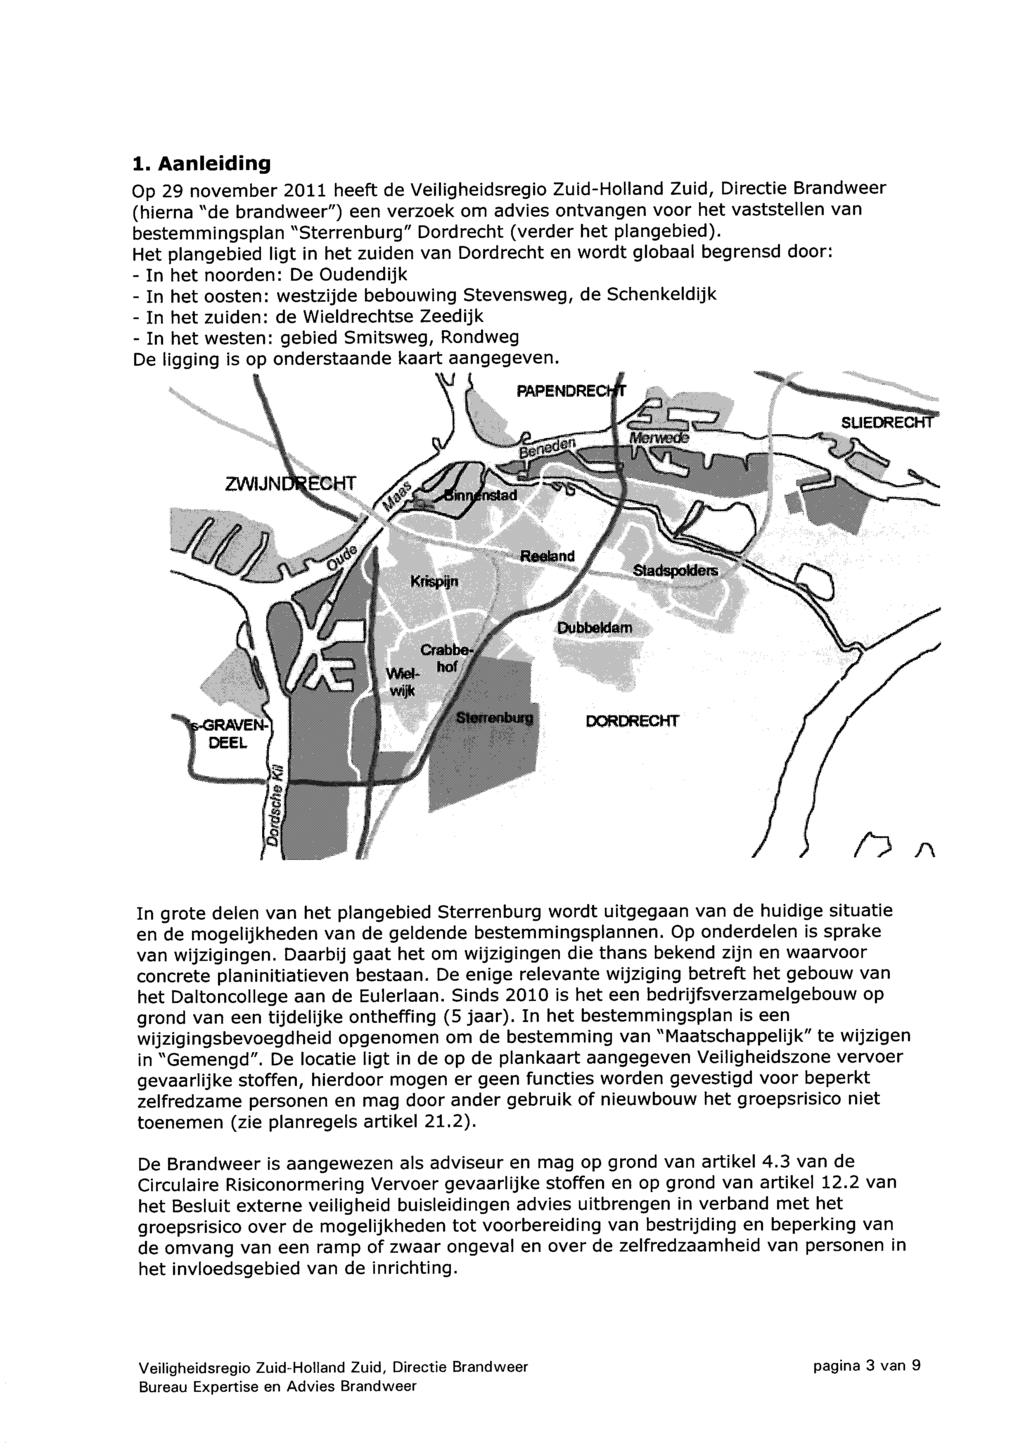 1. Aanleiding Op 29 november 2011 heeft de Veiligheidsregio Zuid-Holland Zuid, Directie Brandweer (hierna ''de brandweer") een verzoek om advies ontvangen voor het vaststellen van bestemmingsplan